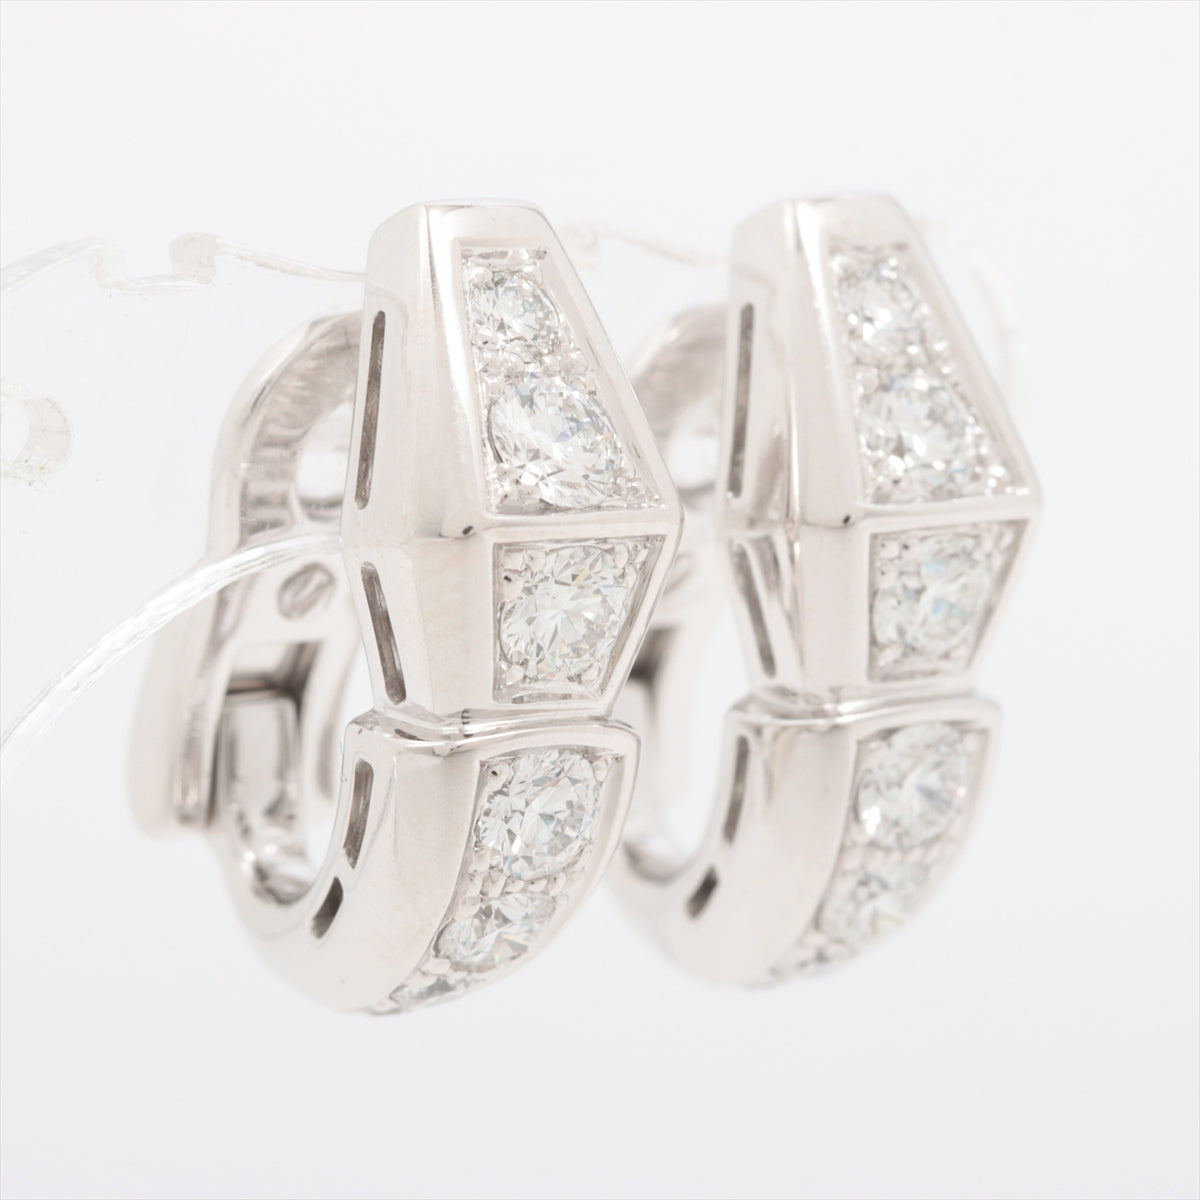 Bvlgari Serpenti Viper diamond Piercing jewelry 750(WG) 11.3g